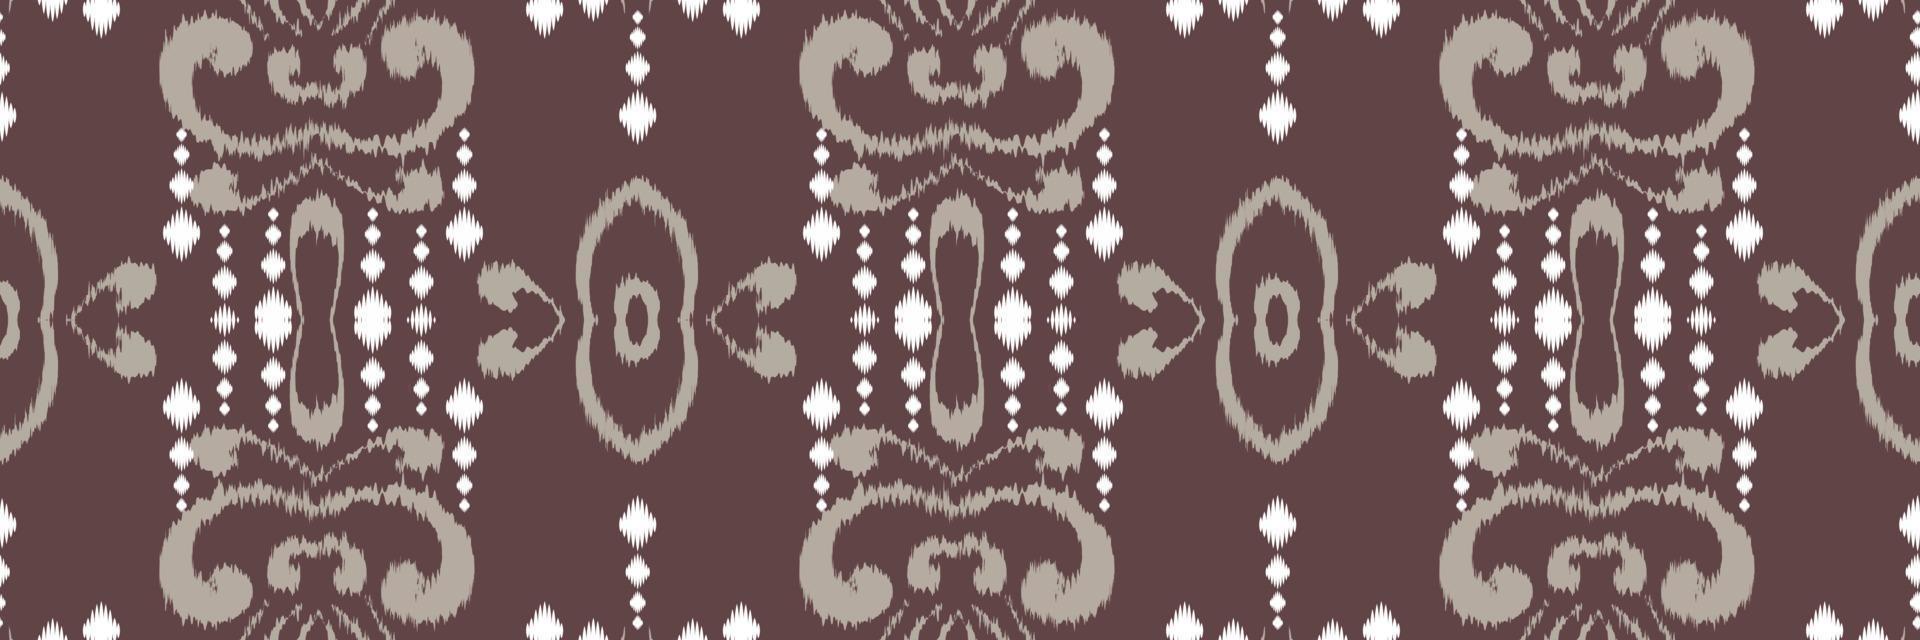 ikat rand batik textil- sömlös mönster digital vektor design för skriva ut saree kurti borneo tyg gräns borsta symboler färgrutor designer